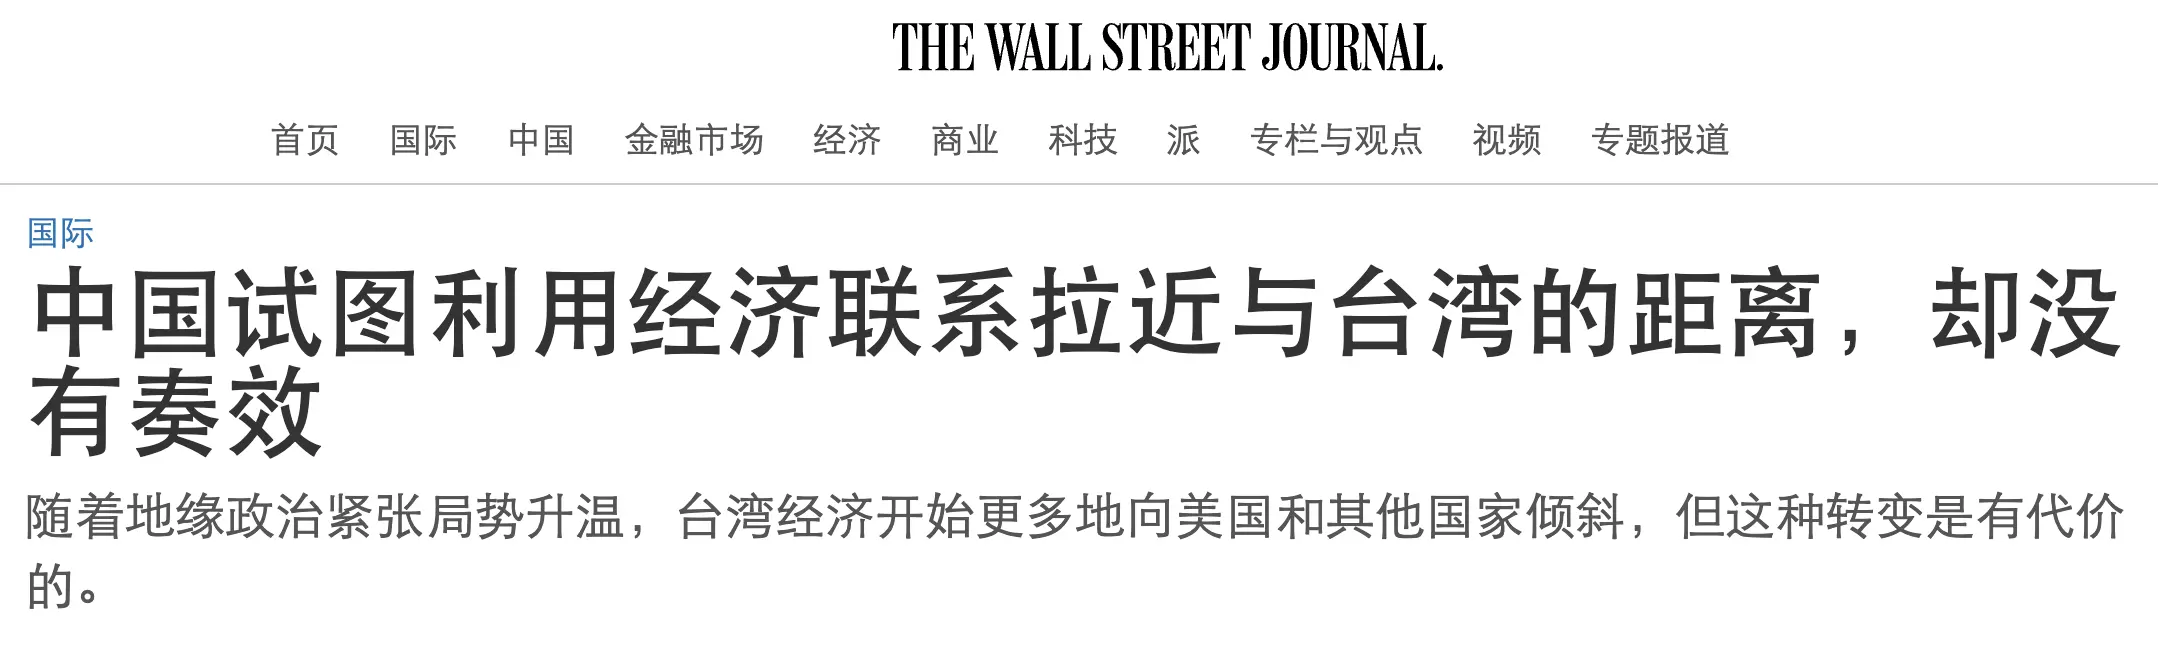 中國經濟脅迫介選「適得其反」，台積電、富士康紛紛站隊，台灣「新南向政策」奏效